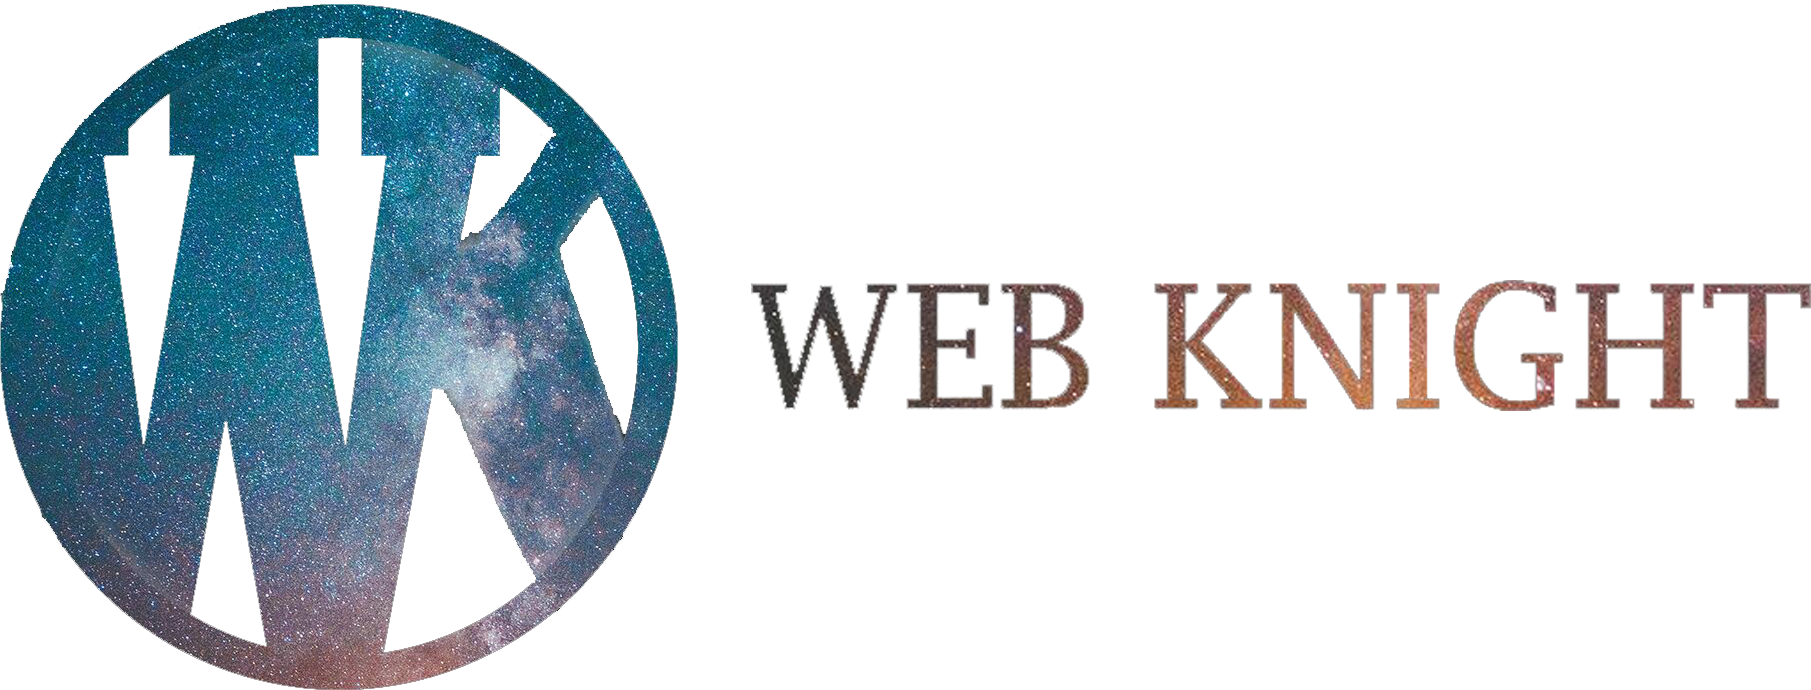 Web_Knight